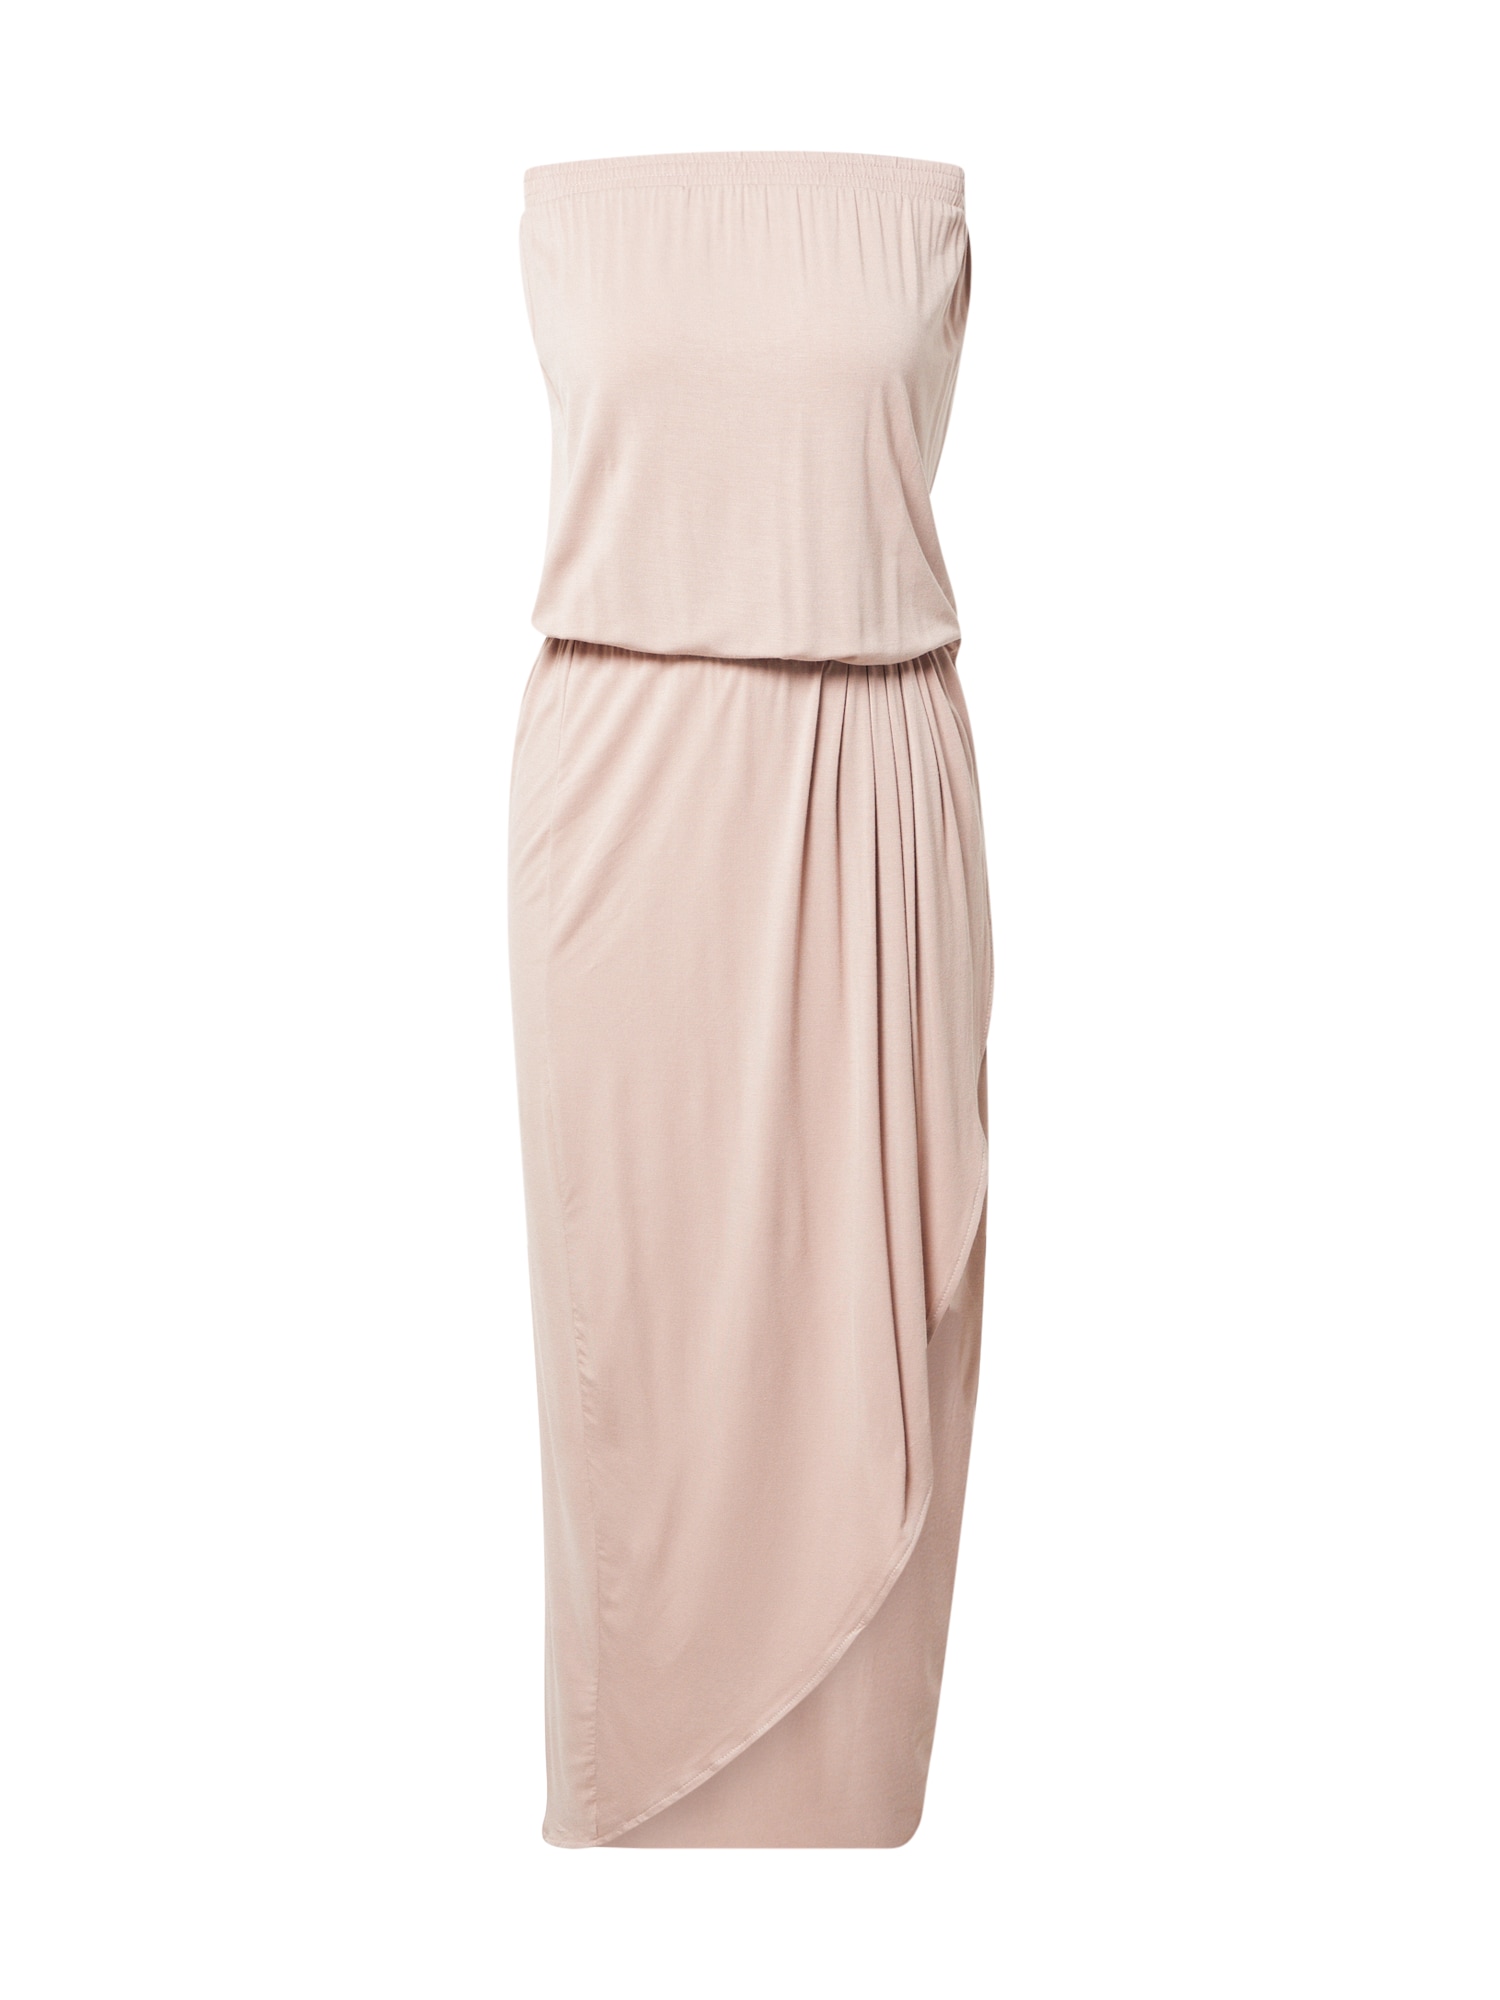 Urban Classics Suknelė ryškiai rožinė spalva